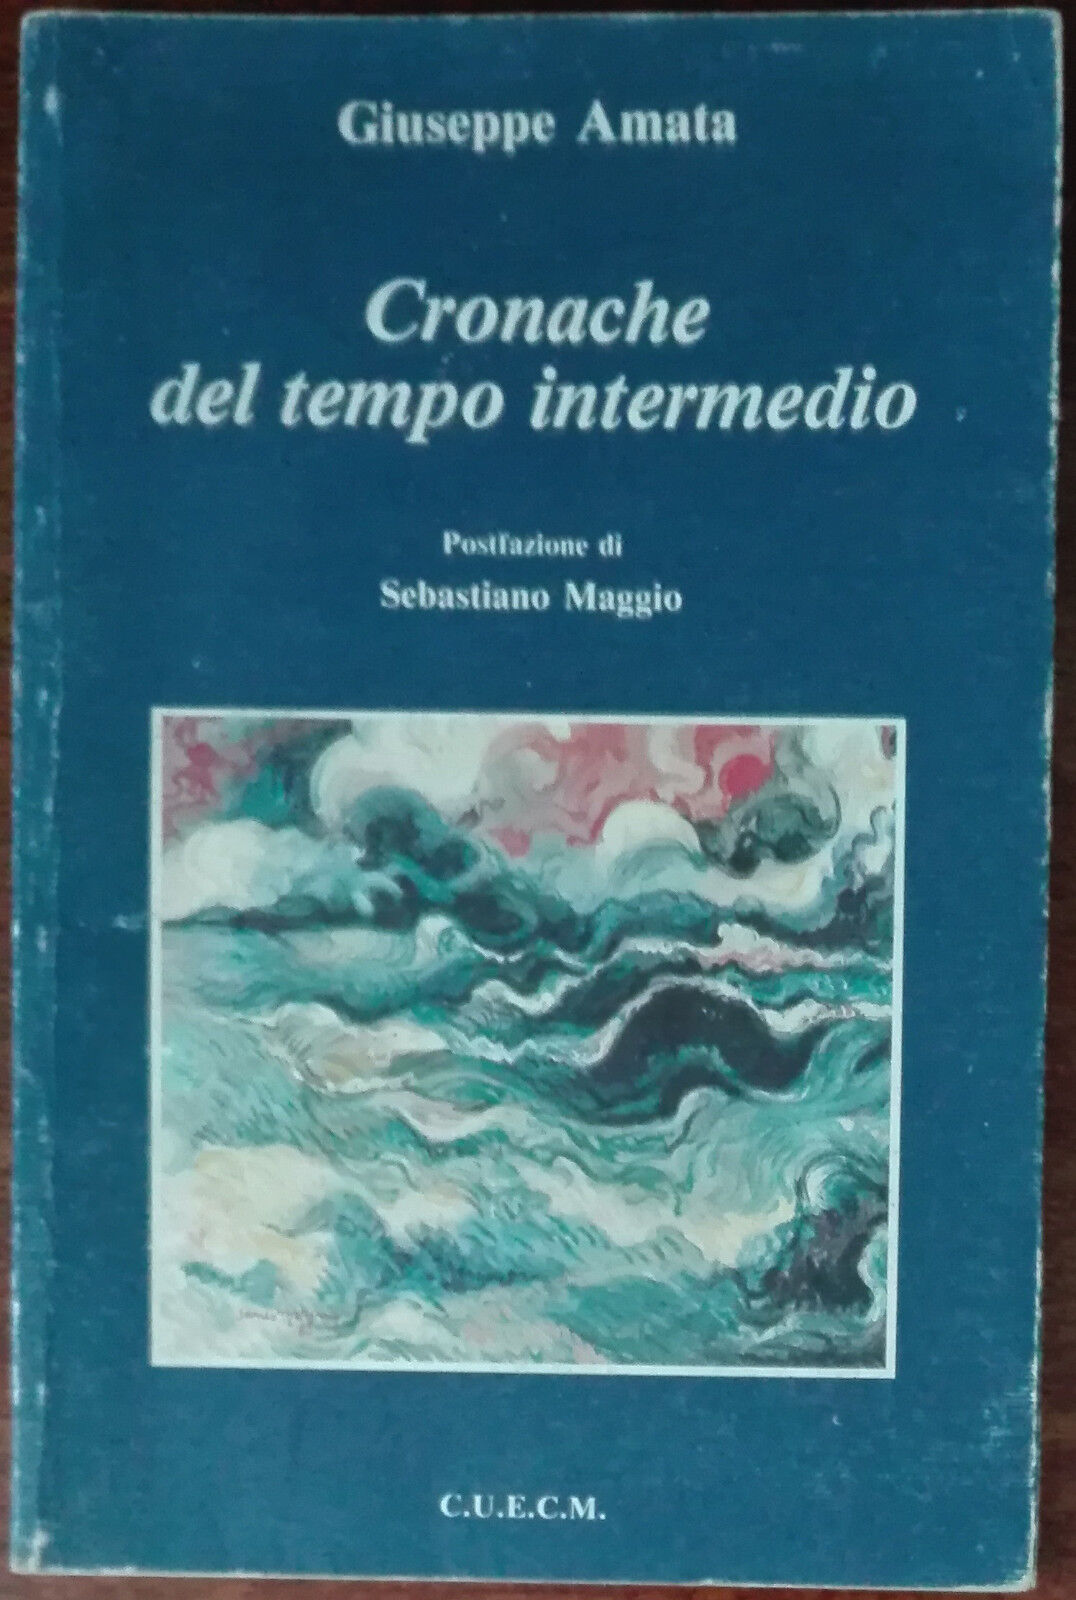 Cronache del tempo intermedio - Giuseppe Amata - C.U.E.C.M.,1992 - A